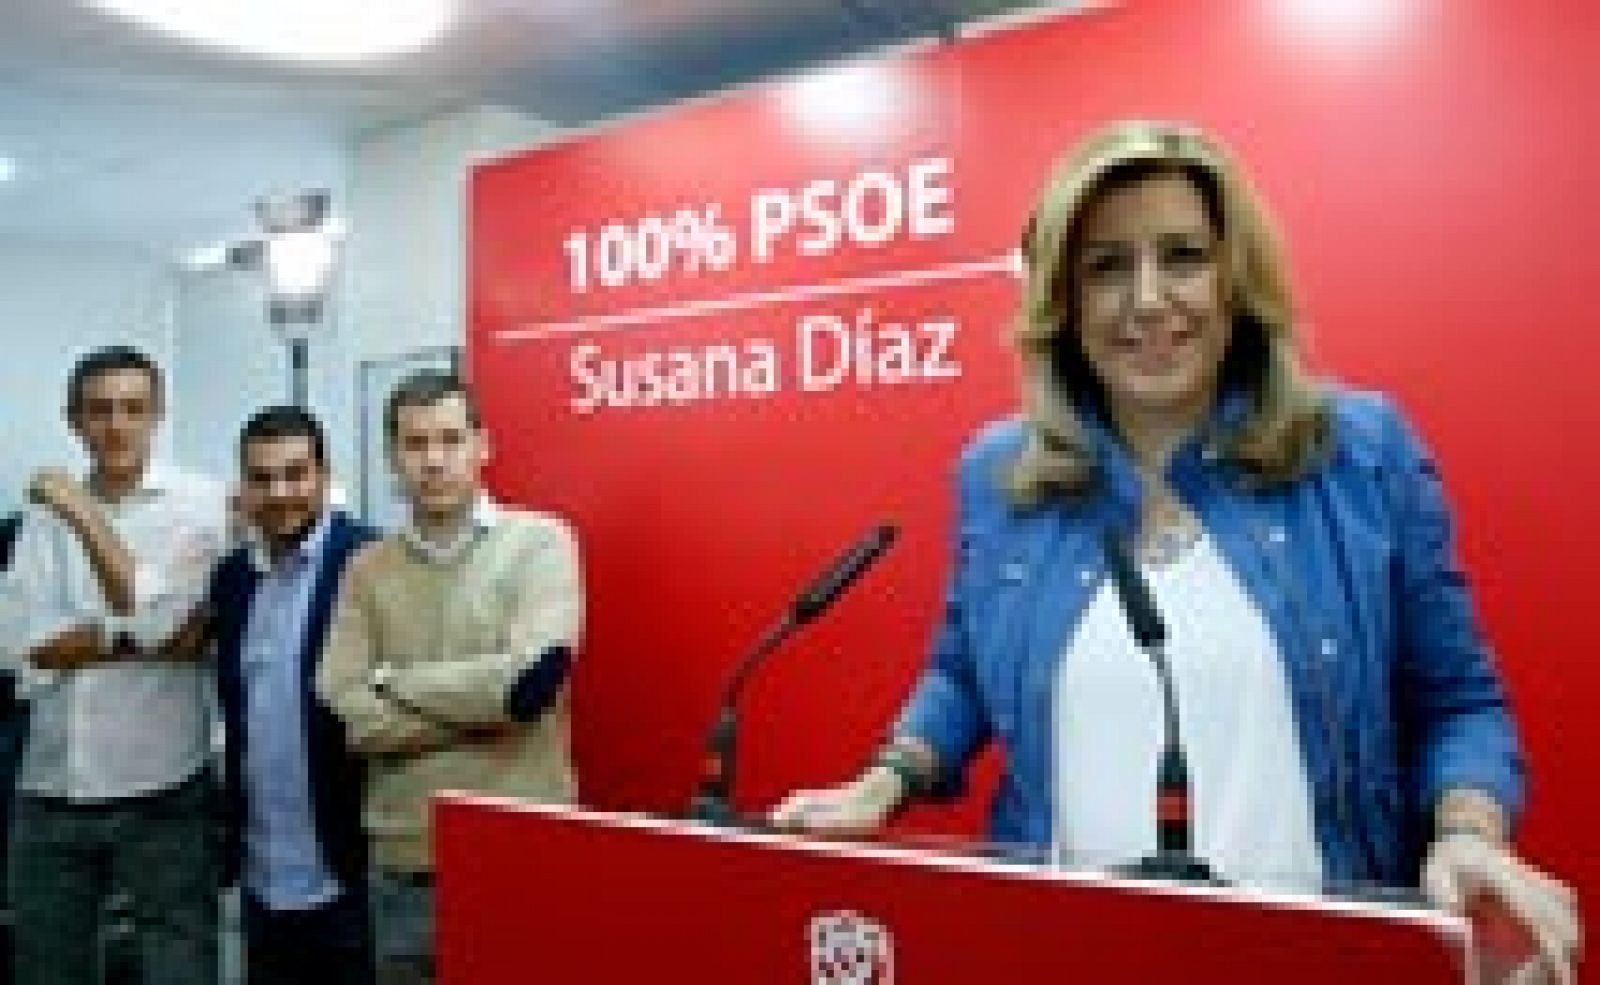 Susana Díaz propone un crédito público para jóvenes, a devolver en el IRPF, cuando tengan ingresos suficientes